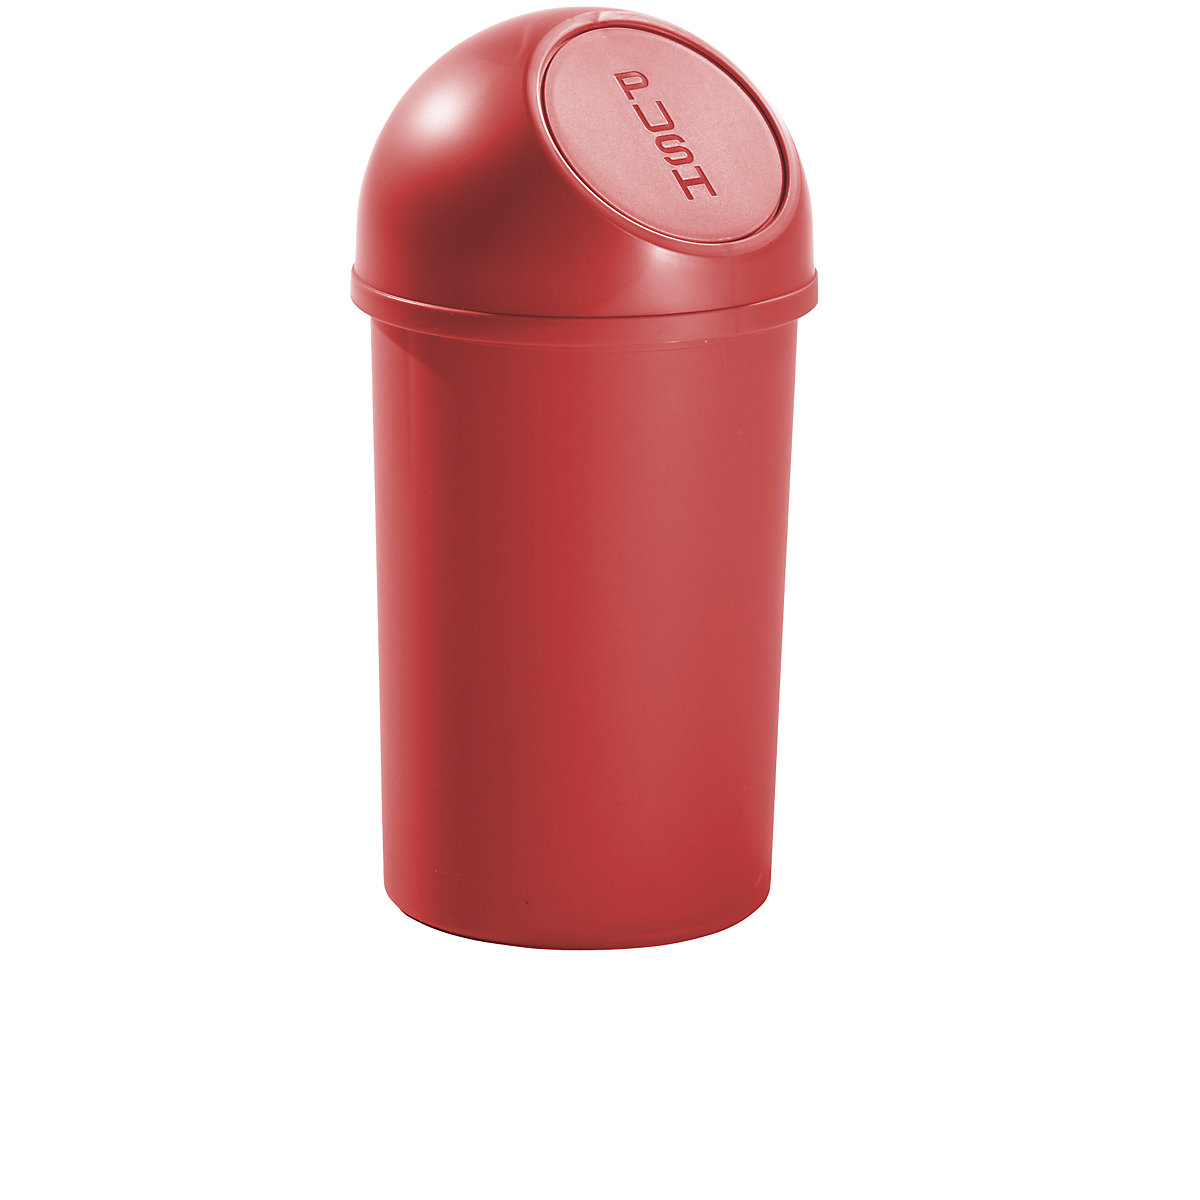 Samozavírací nádoba na odpadky z plastu – helit, objem 13 l, v x Ø 490 x 252 mm, červená, bal.j. 6 ks-4